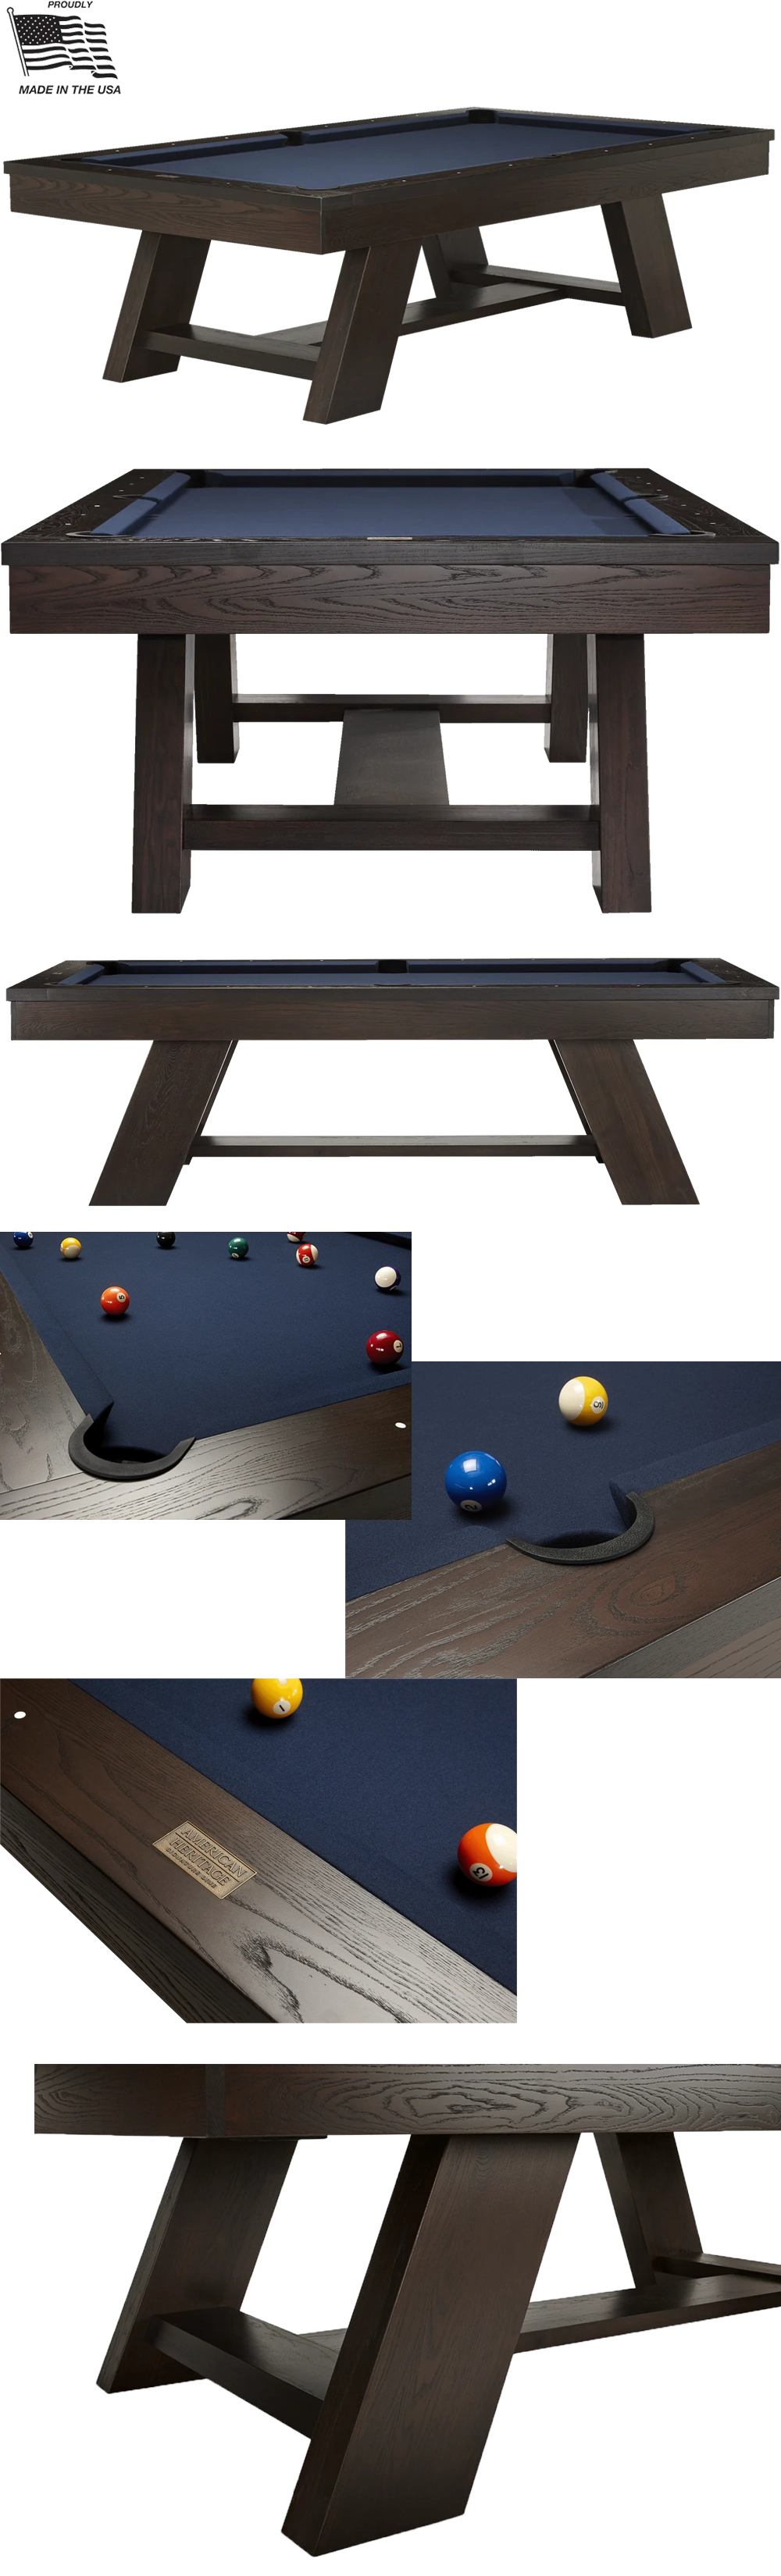 Deerfield Pool Table Images